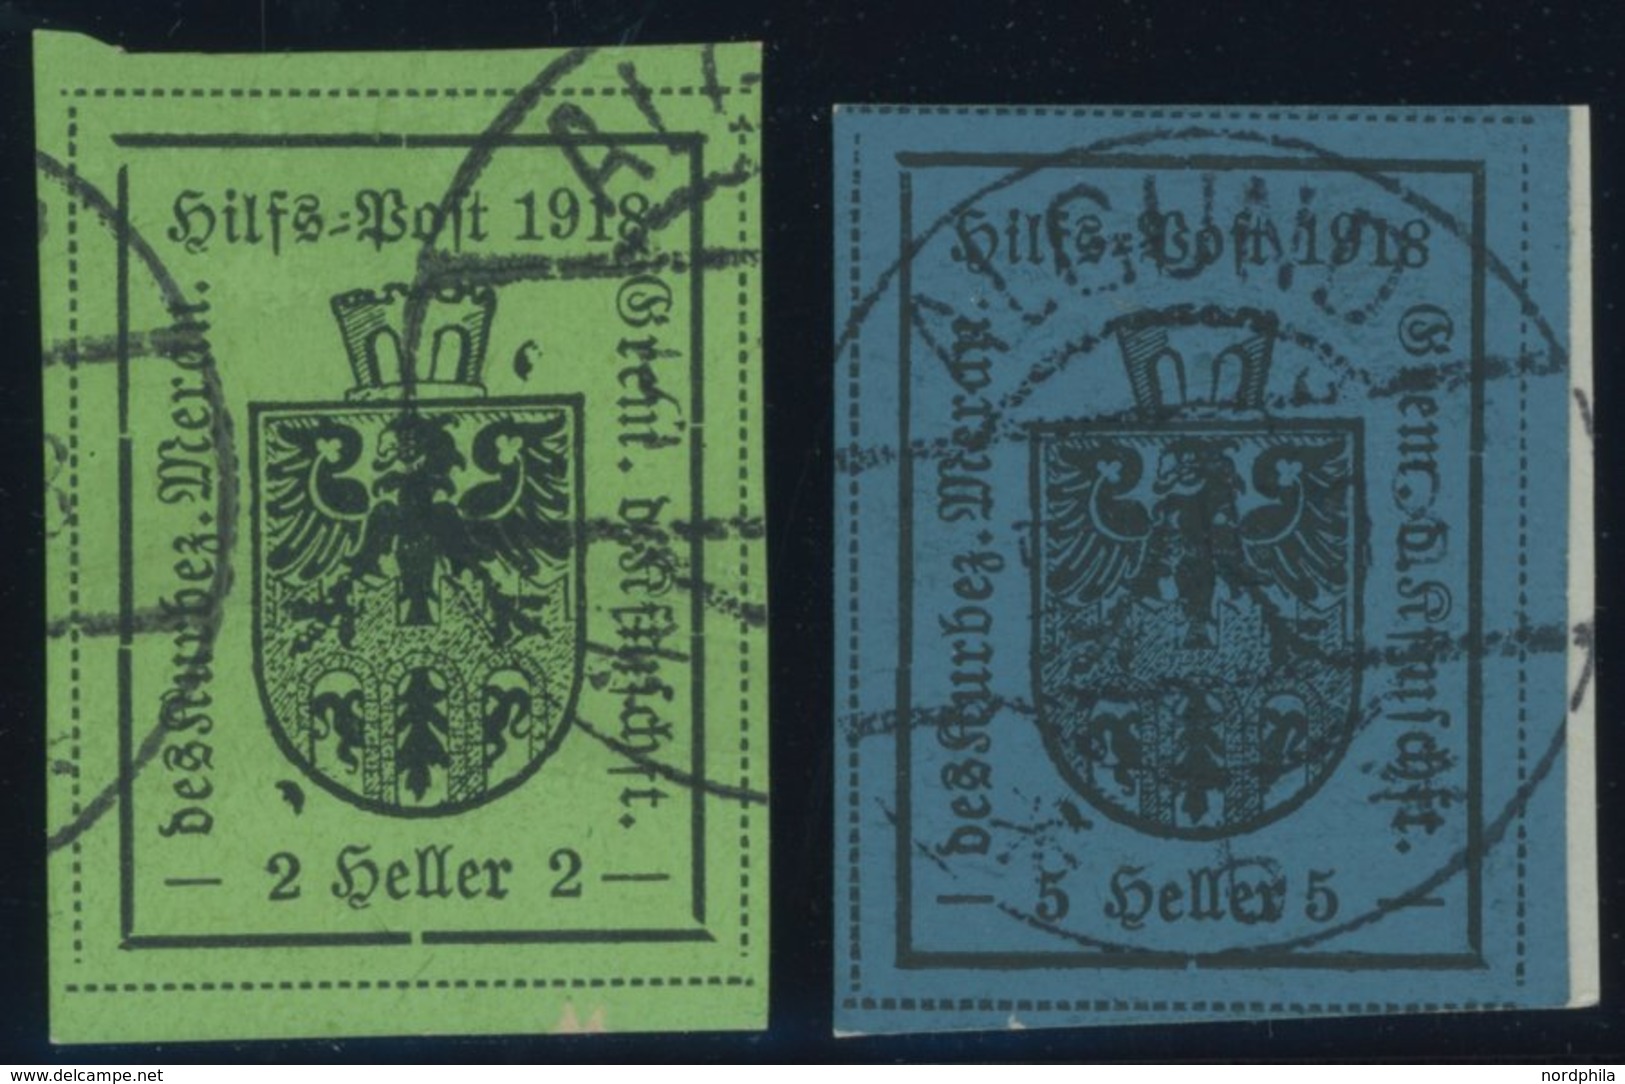 HILFSPOST MERAN 4,5Ia O,BrfStk , 1918, 2 H. Schwarz Auf Hellgrün Und 5 H. Schwarz Auf Dunkelblau, 1. Auflage, 2 Prachtwe - Merano